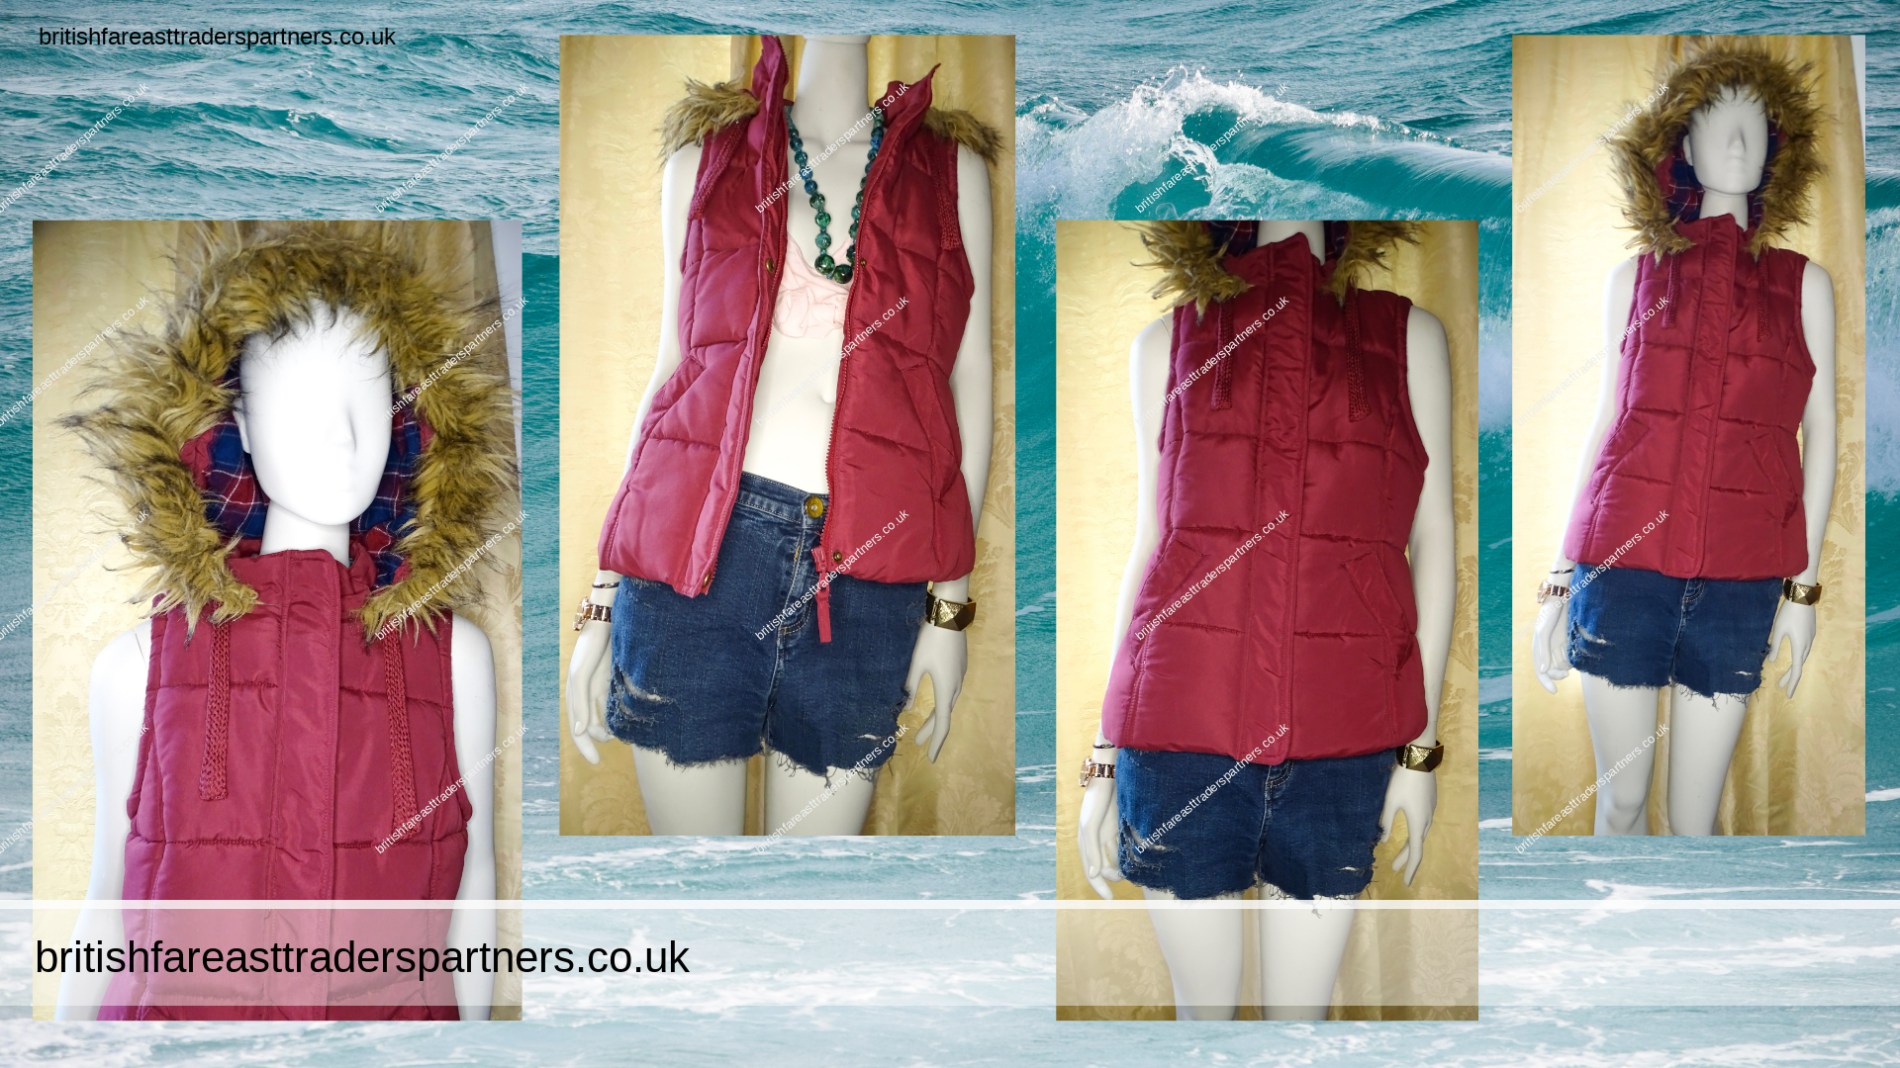 Ladies’ Women’s GEORGE BURGUNDY / WINE RED PADDED Hooded Faux Fur GILET / BODYWARMER Sleeveless Jacket UK 12 / EUR 40